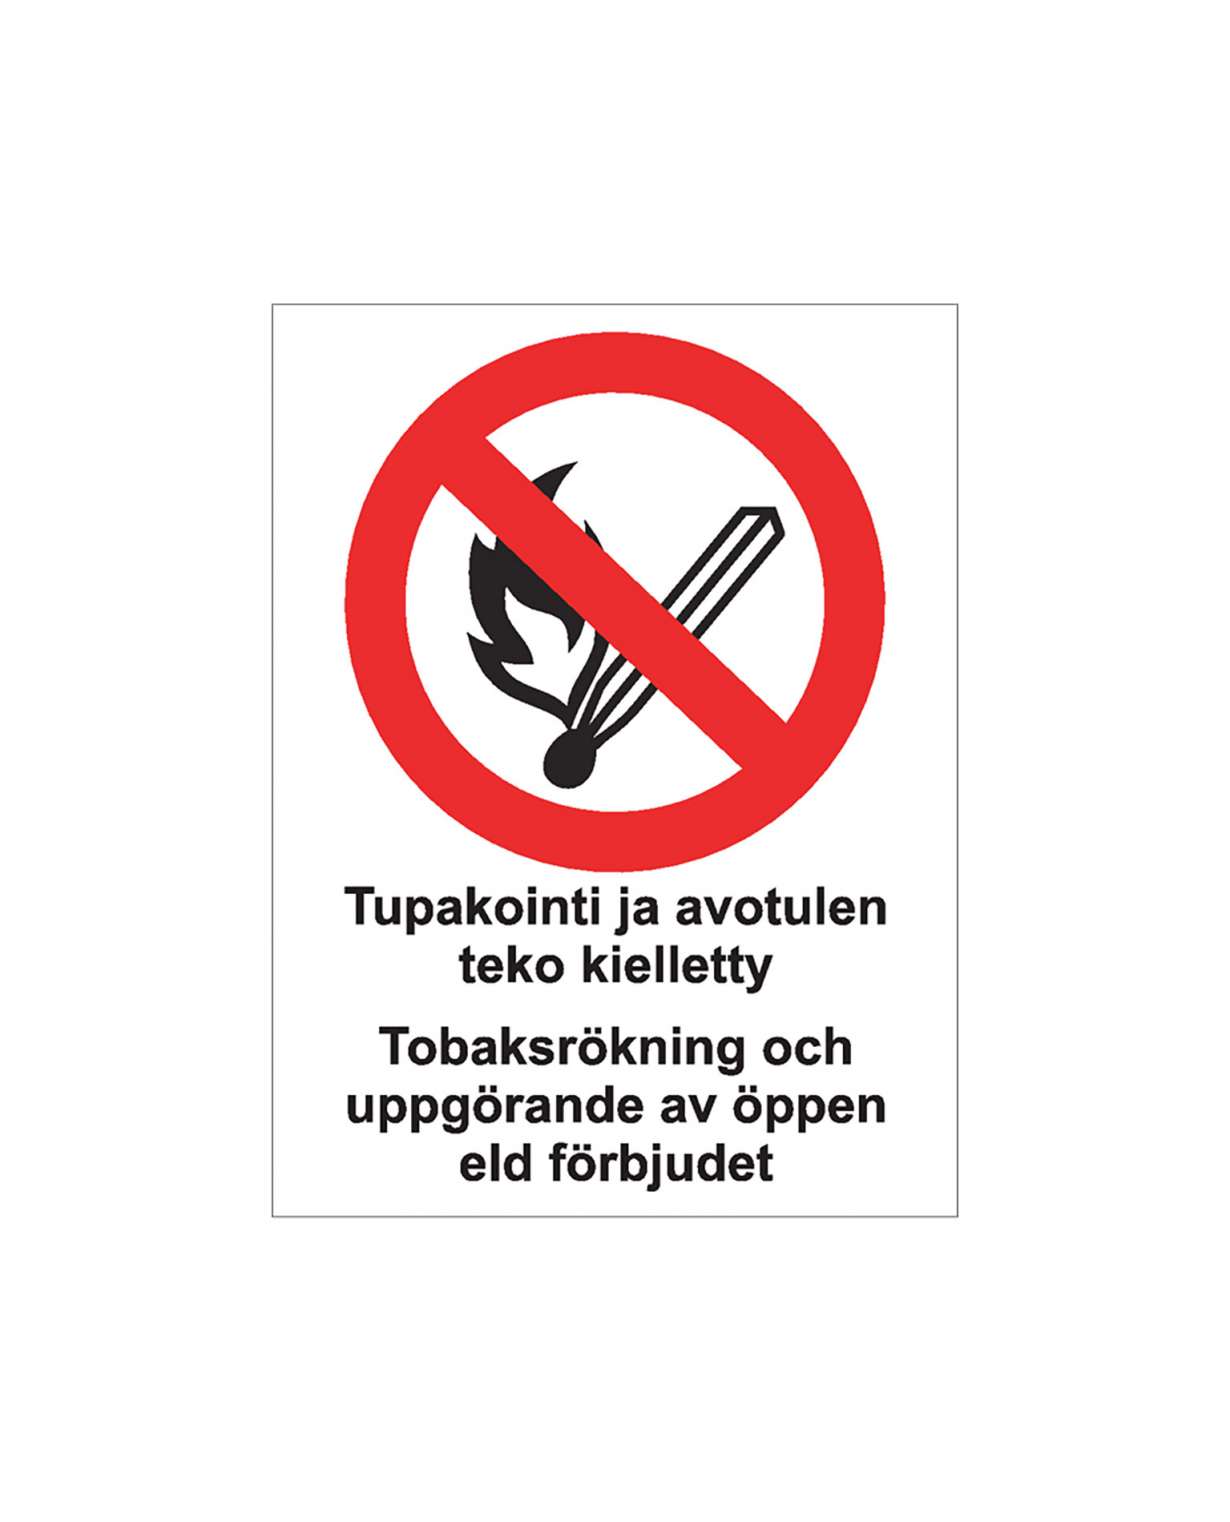 Tupakointi ja avotulen teko kielletty ruotsi, Ibond alumiini, 200x300 mm